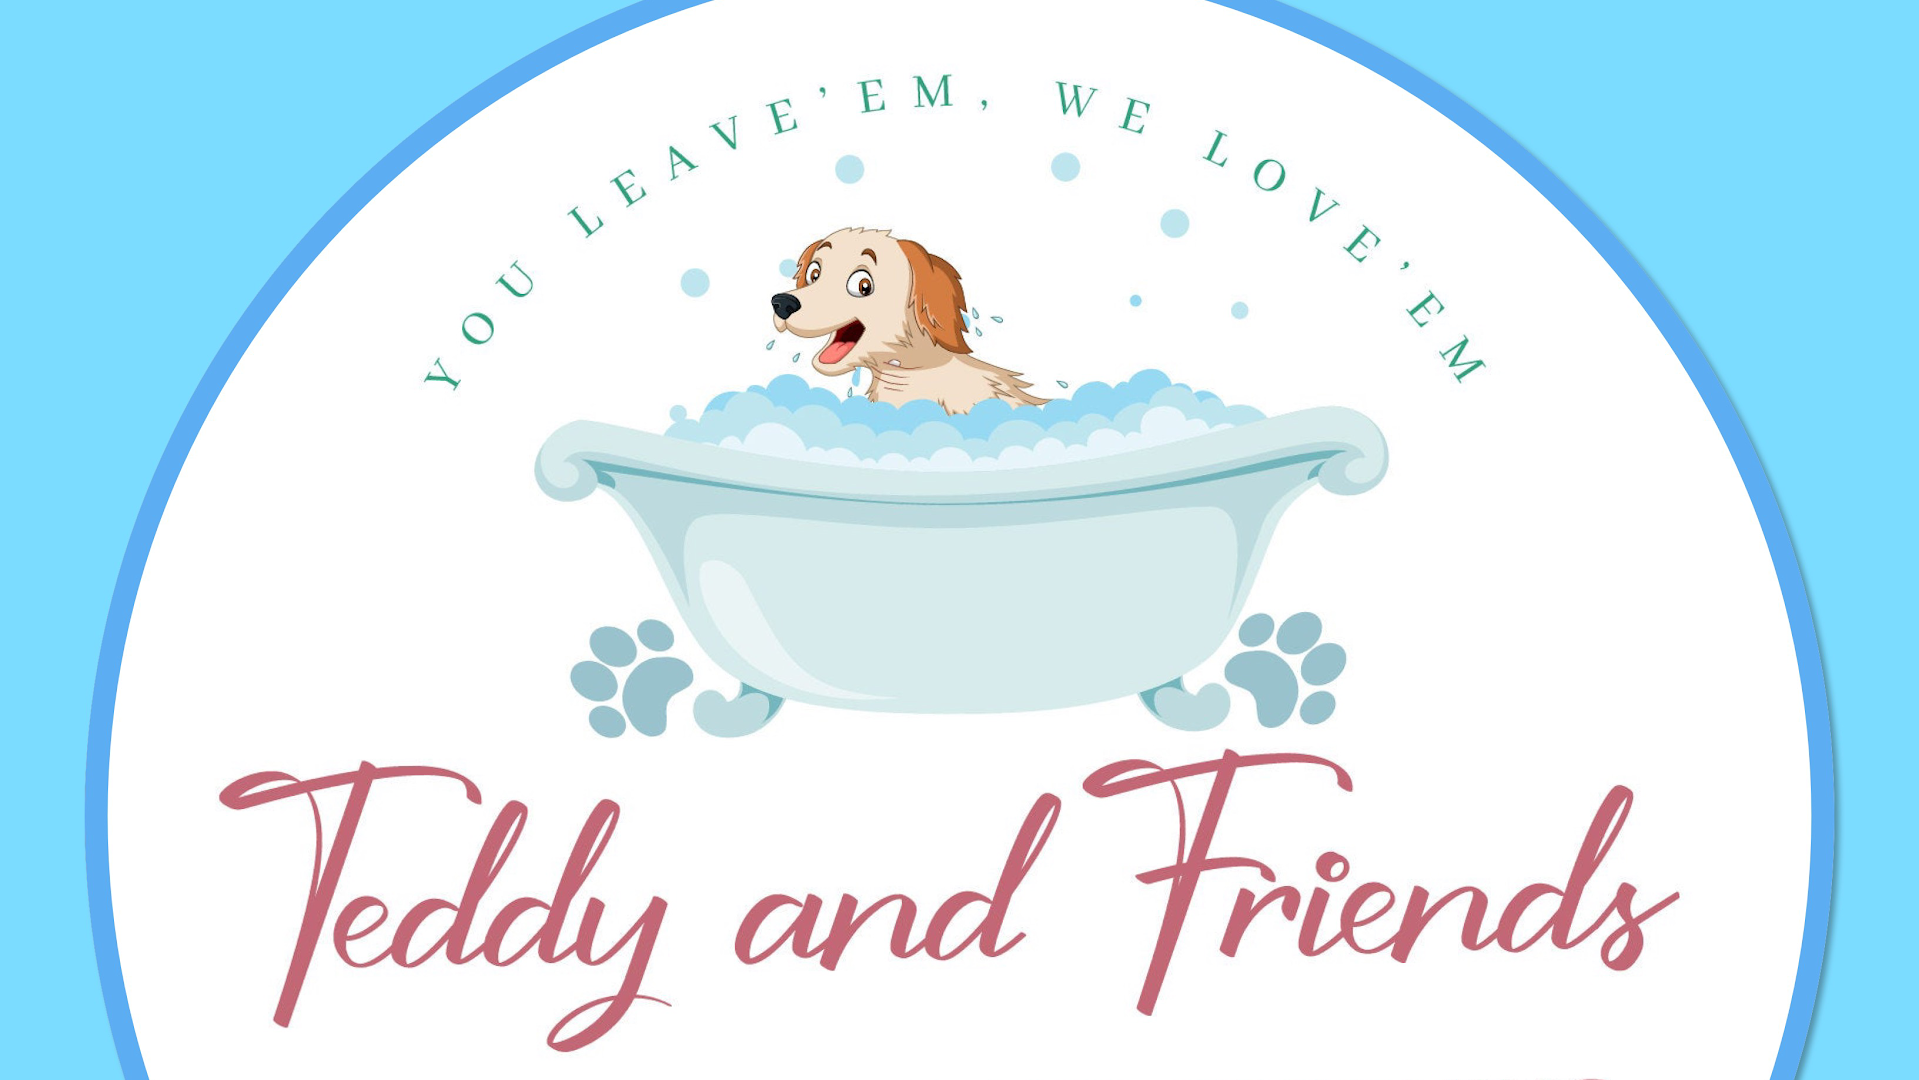 Teddy and Friends Dog Boarding LLC